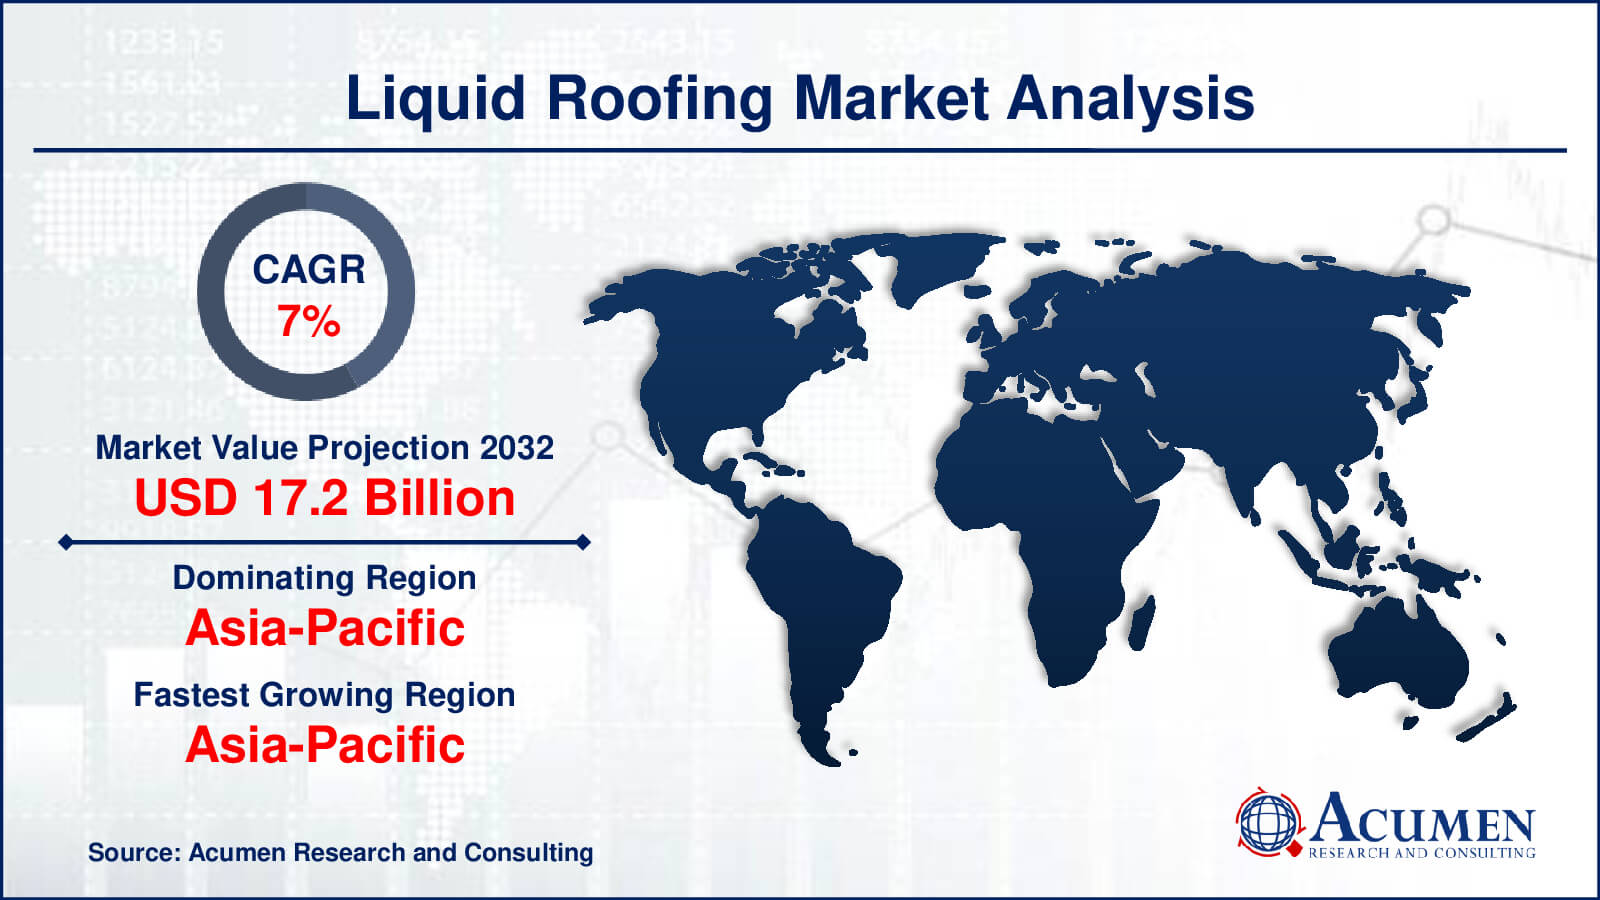 Global Liquid Roofing Market Trends